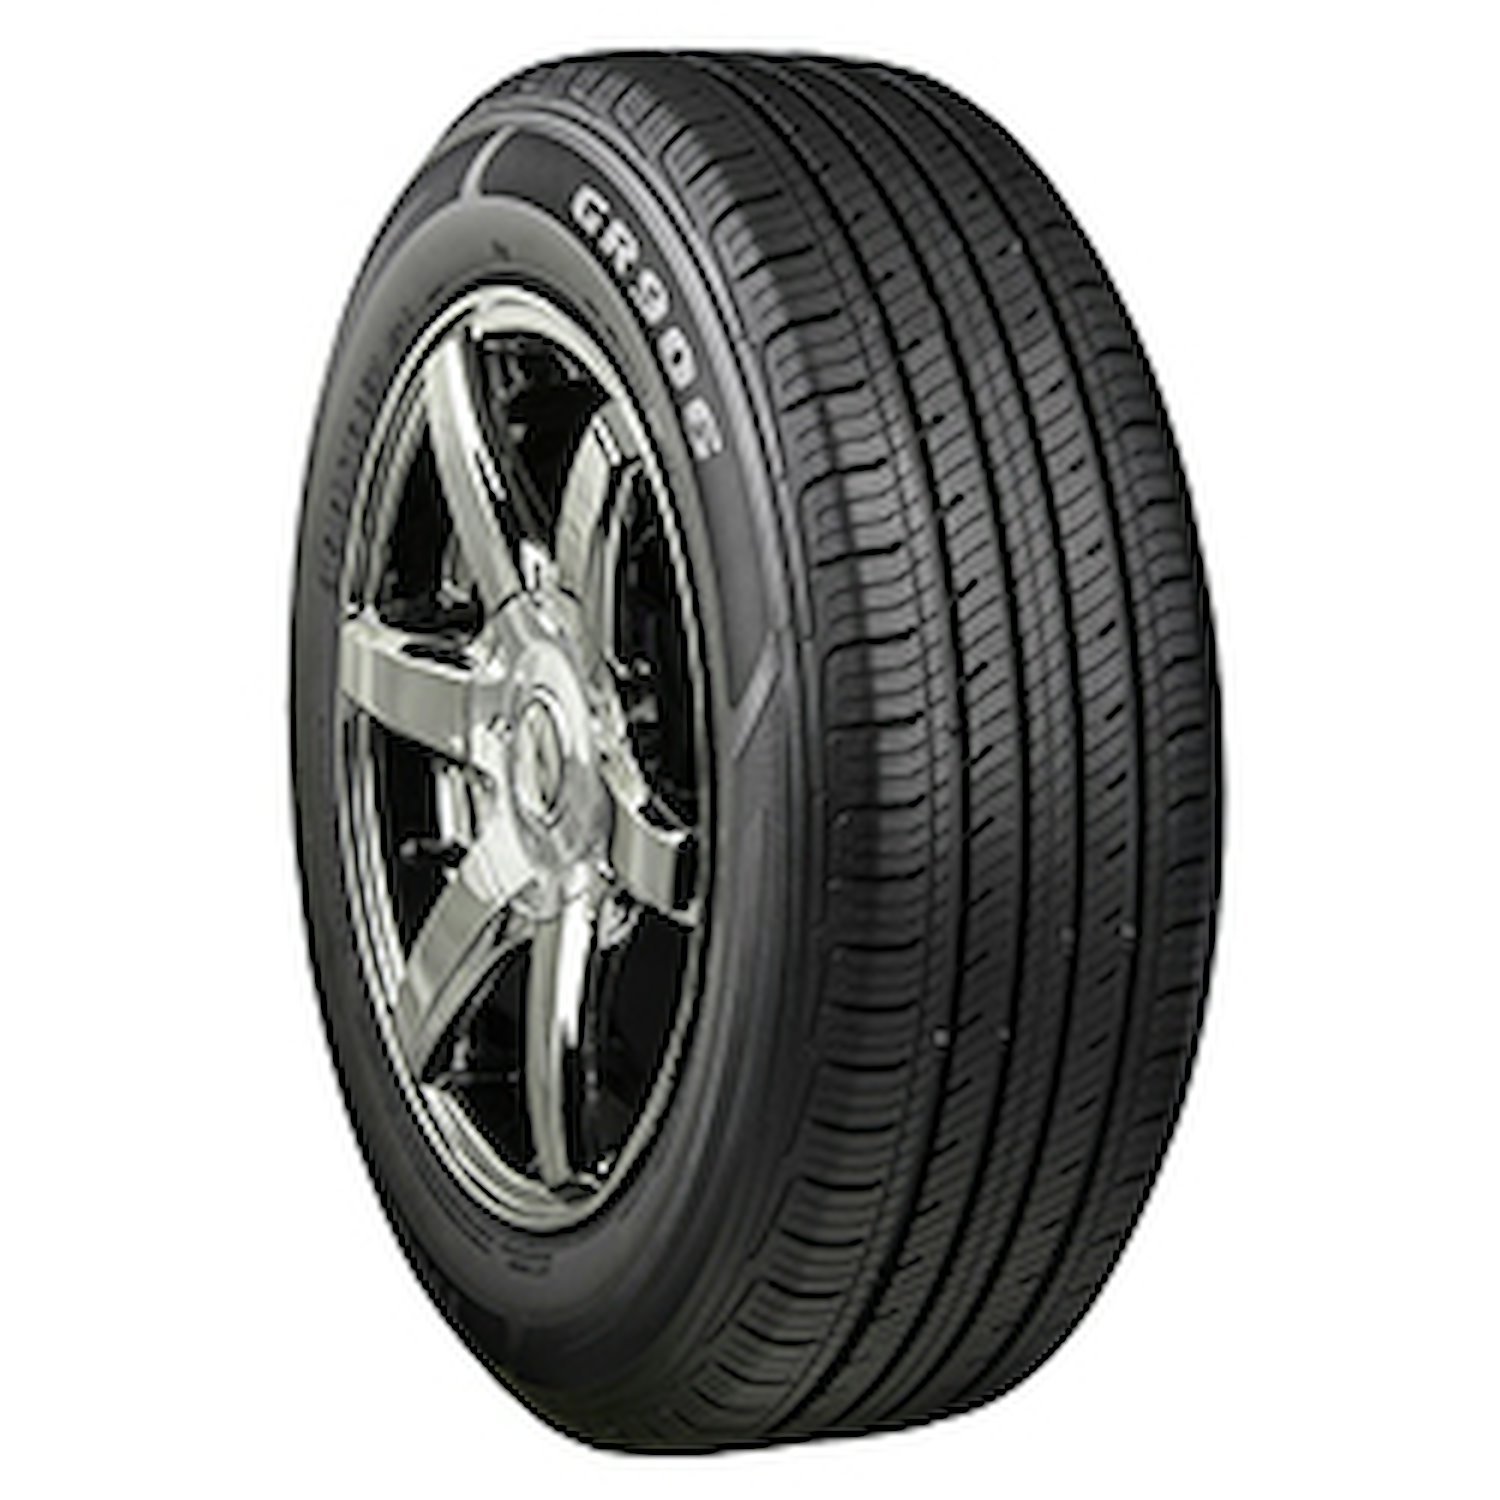 GR906 Tire, 185/70R13 86T